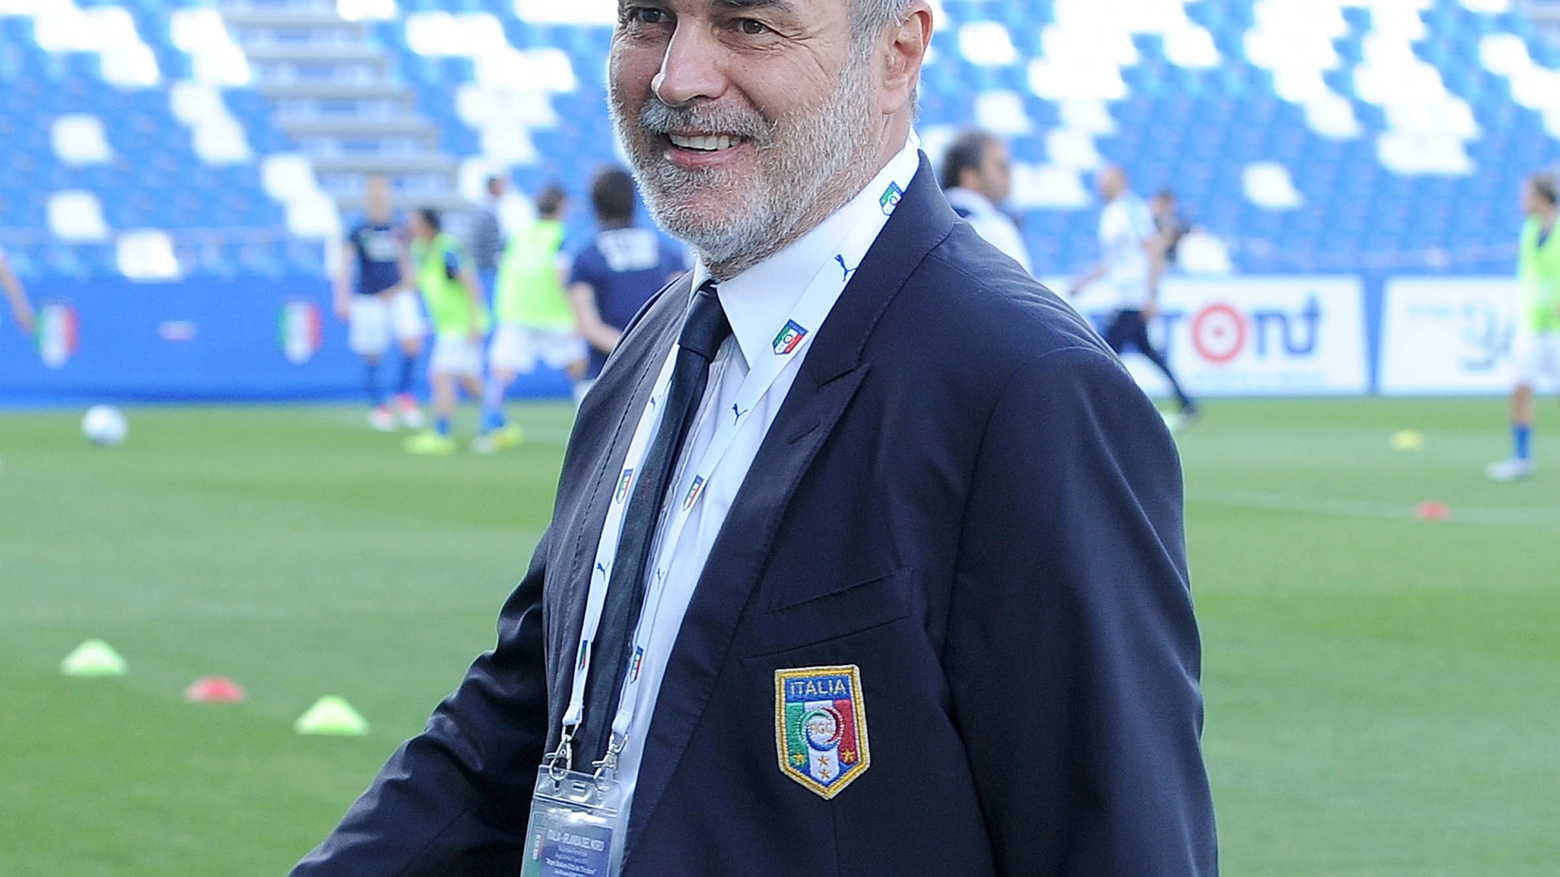 Antonio Cabrini